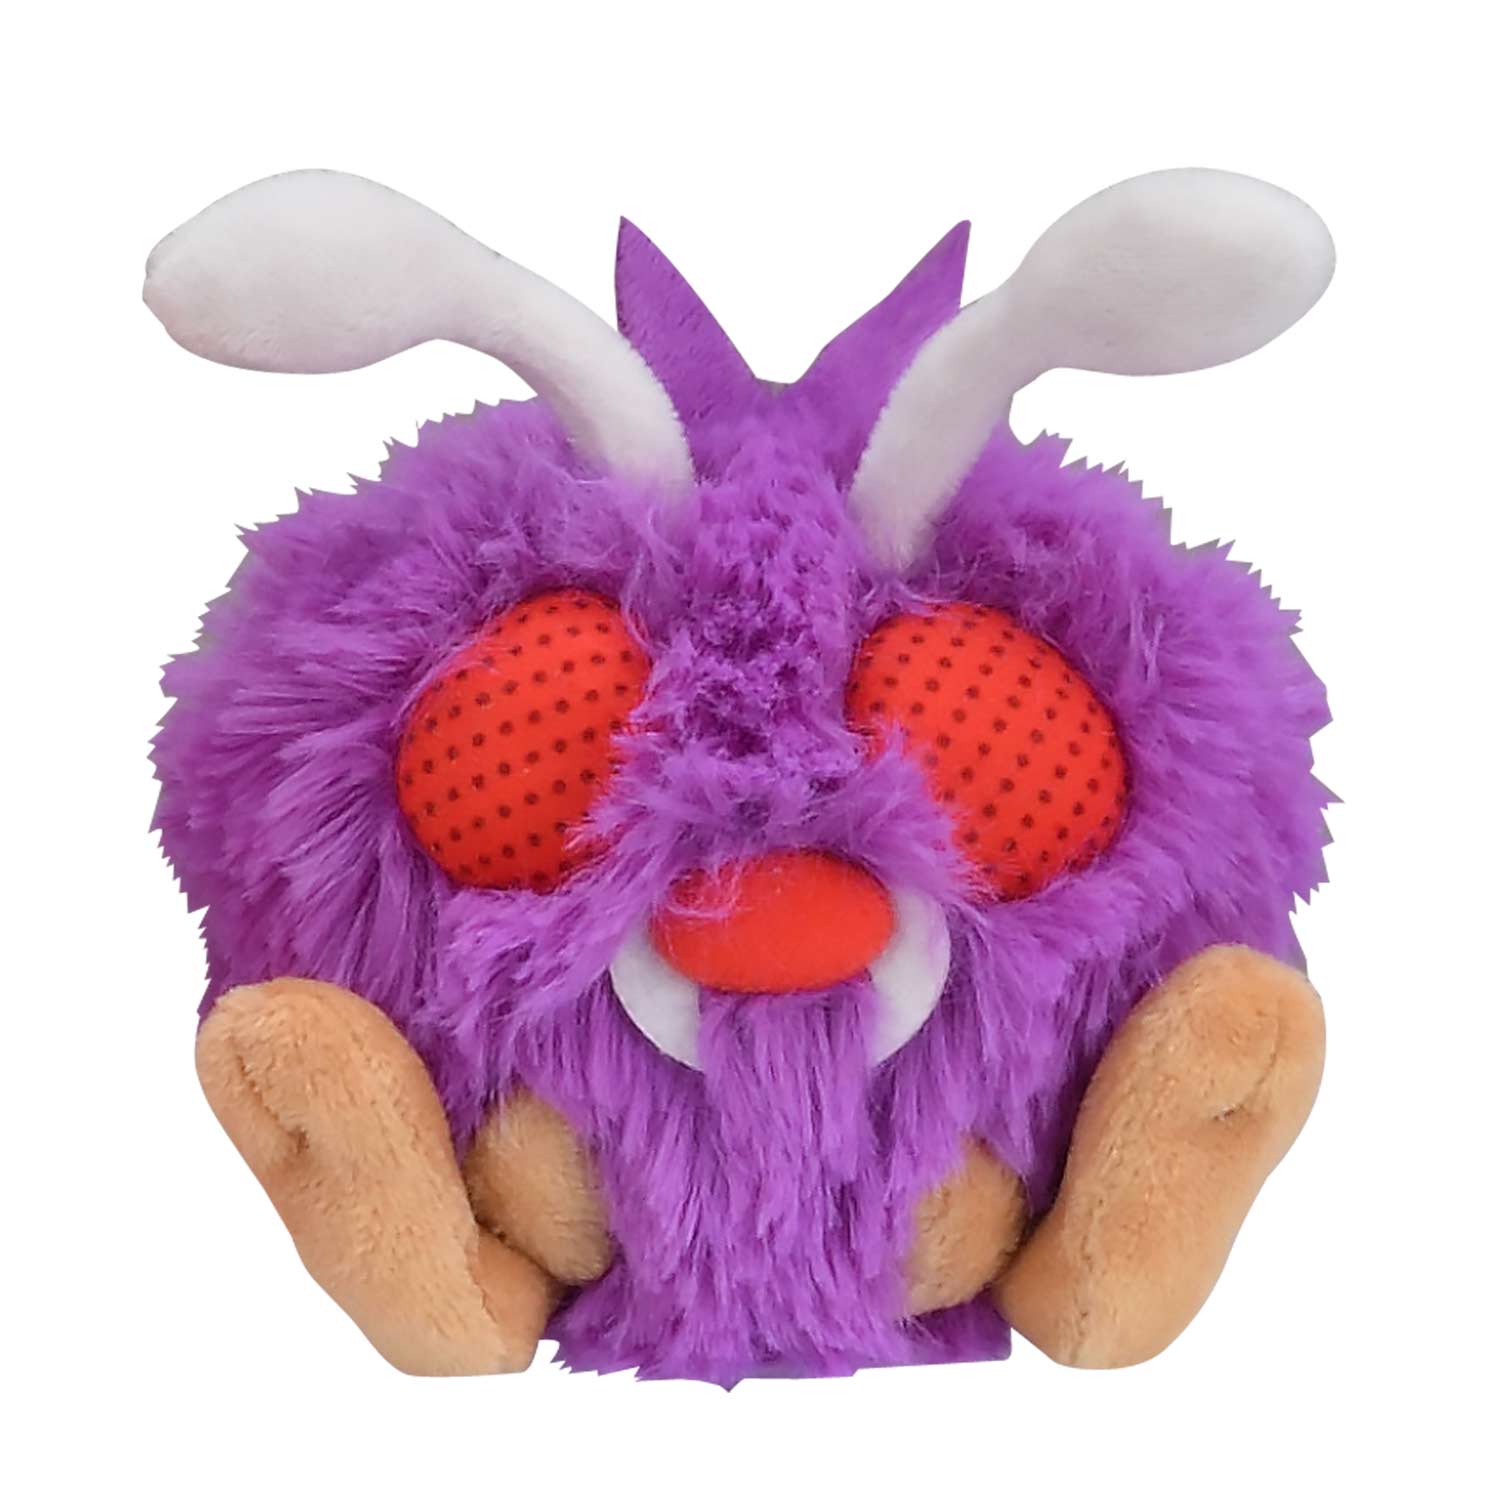 crash bandicoot stuffed animal